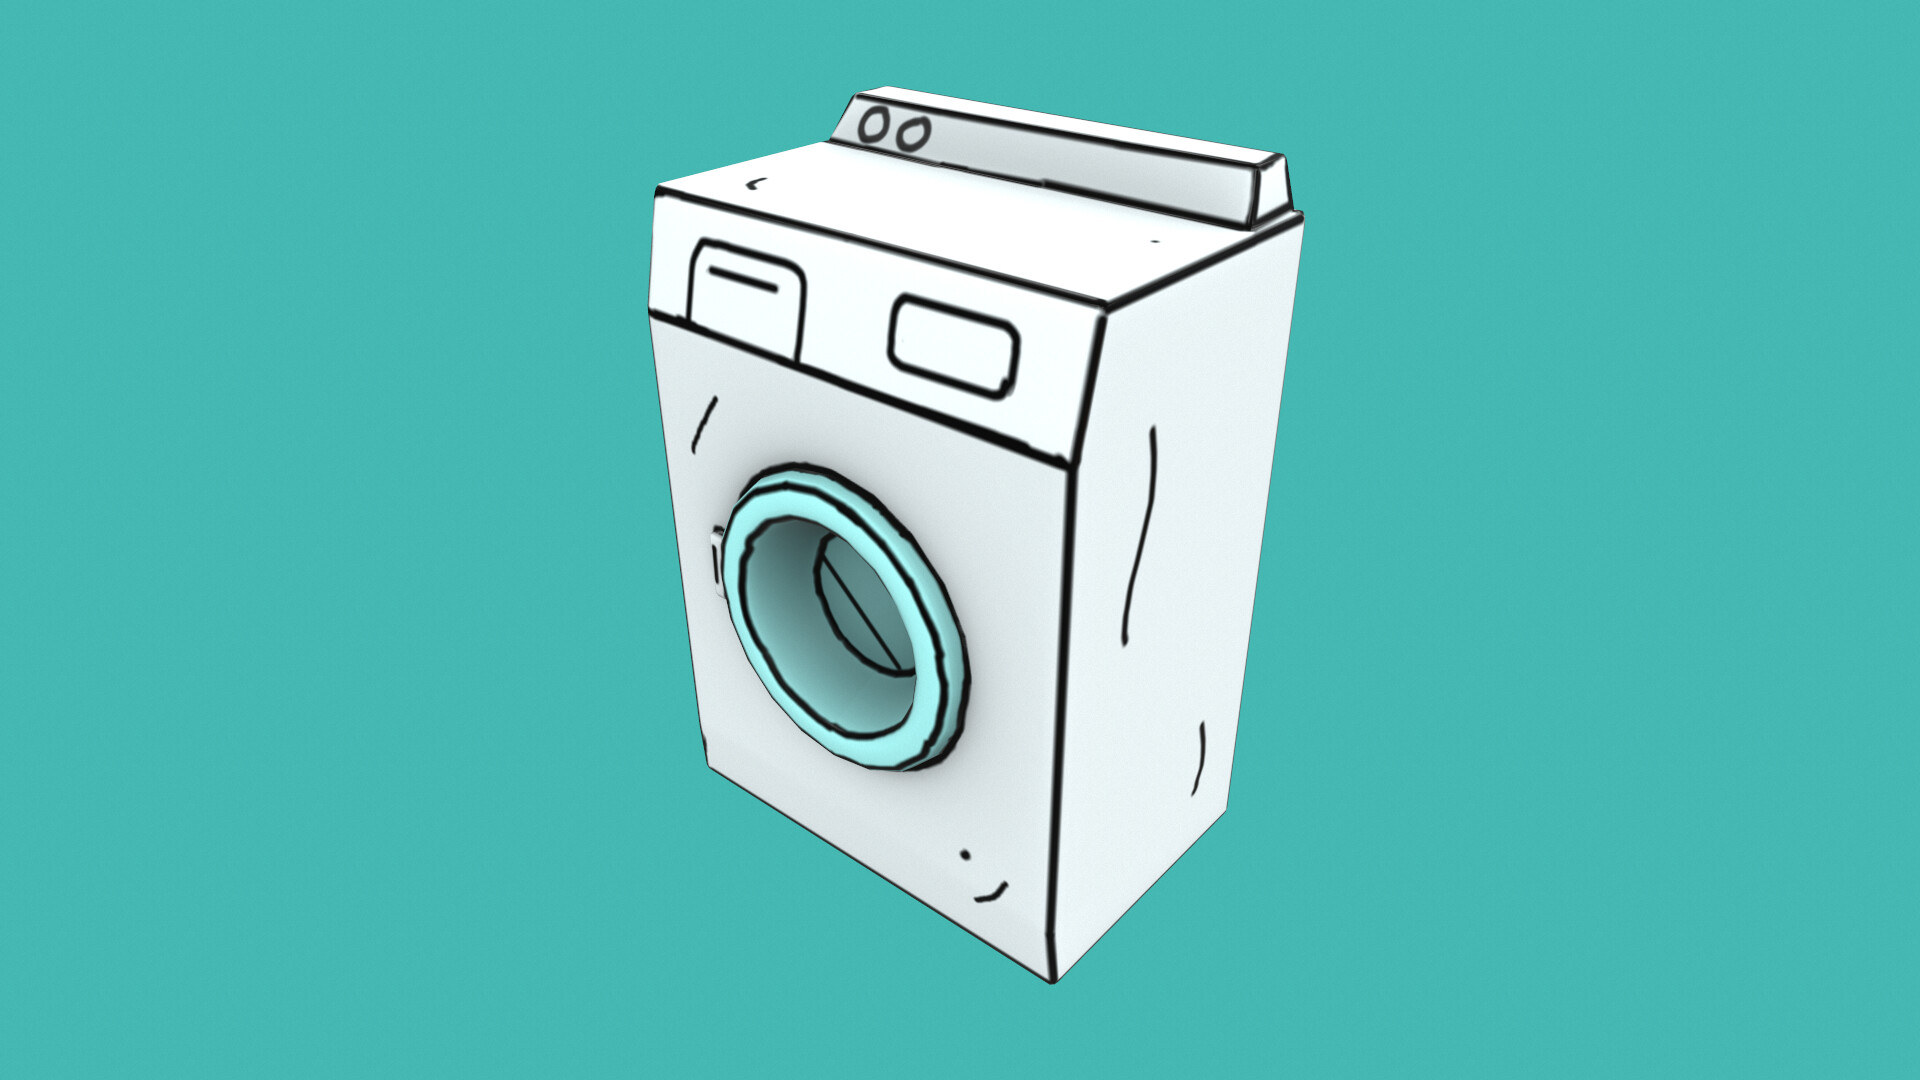 ArtStation - Washing Machine Cartoon